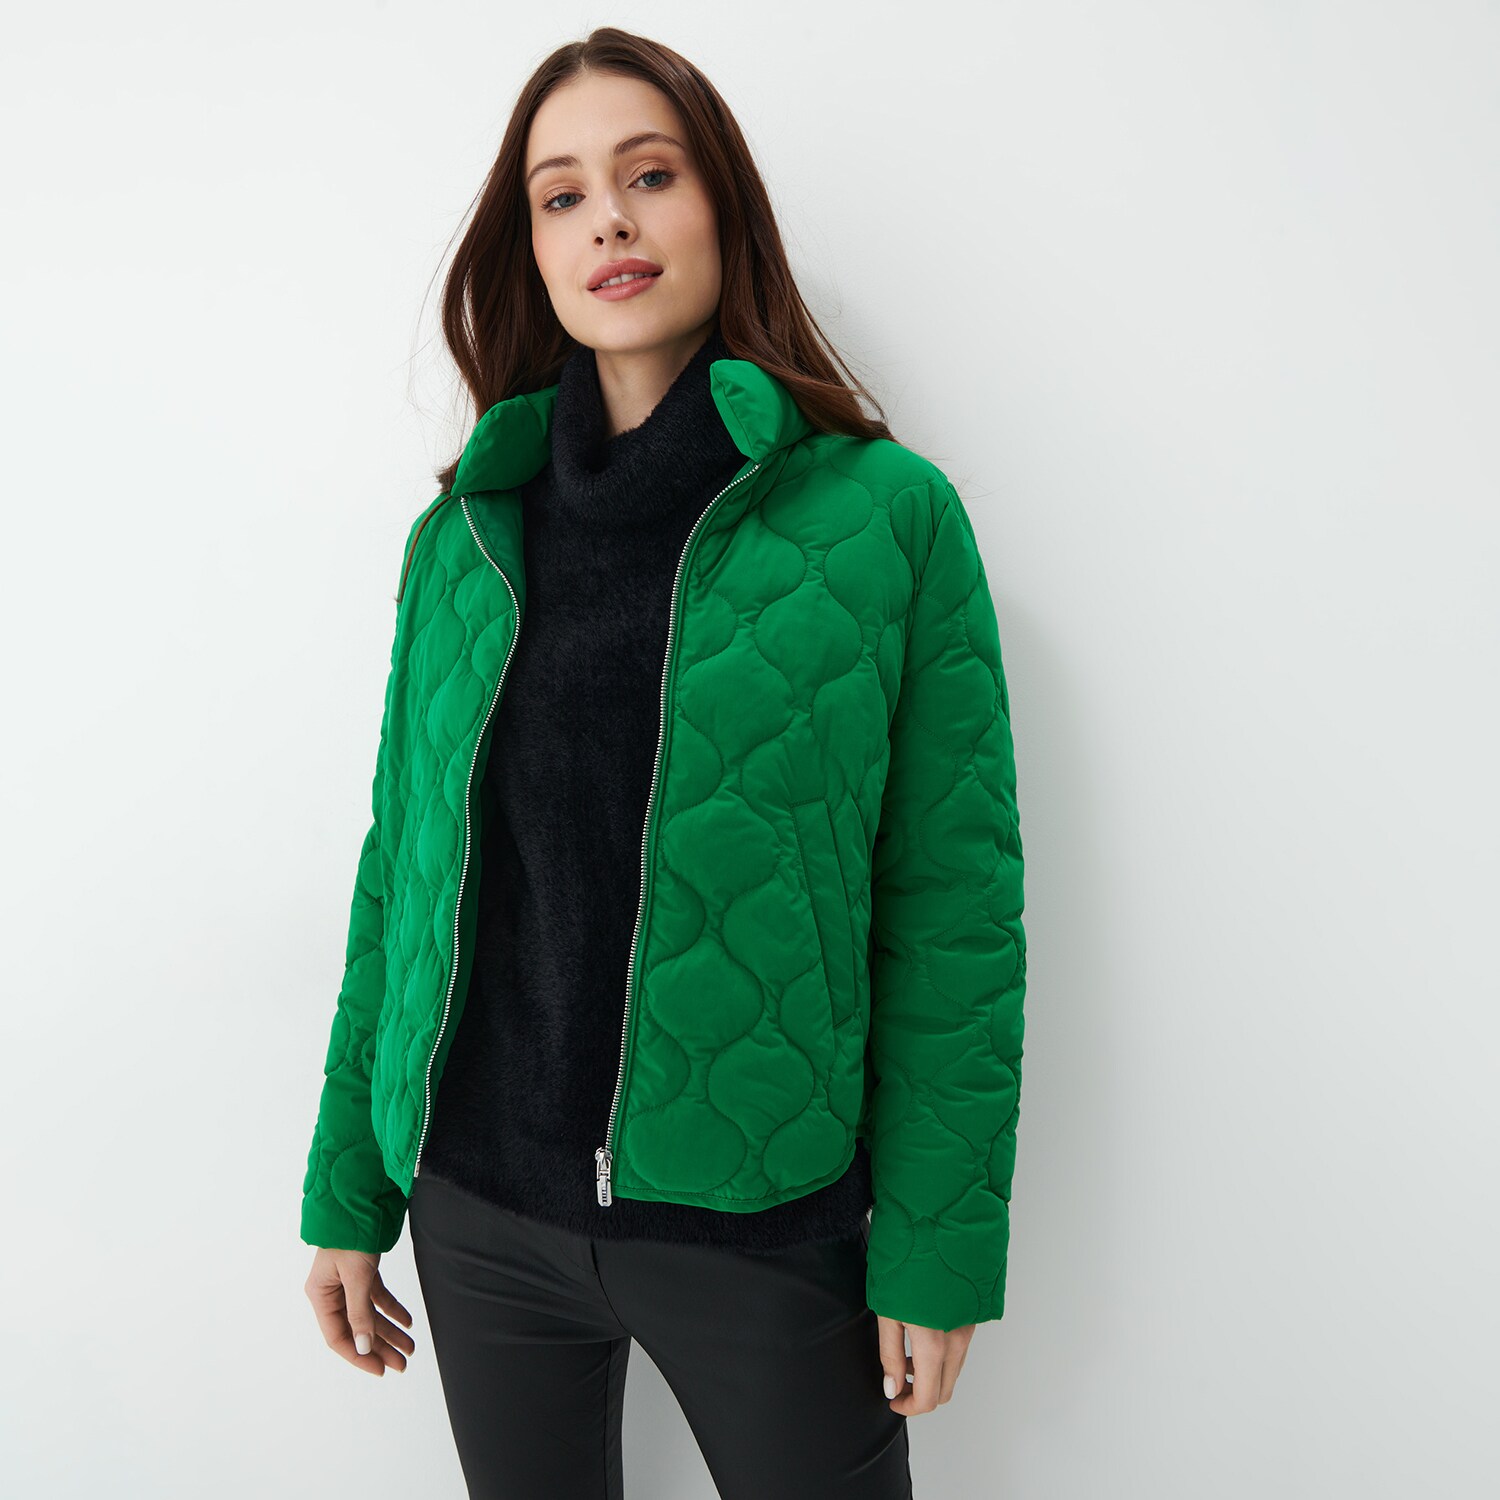 Mohito – Geacă verde matlasată – Verde All > outerwear > spring jackets 2023-10-04